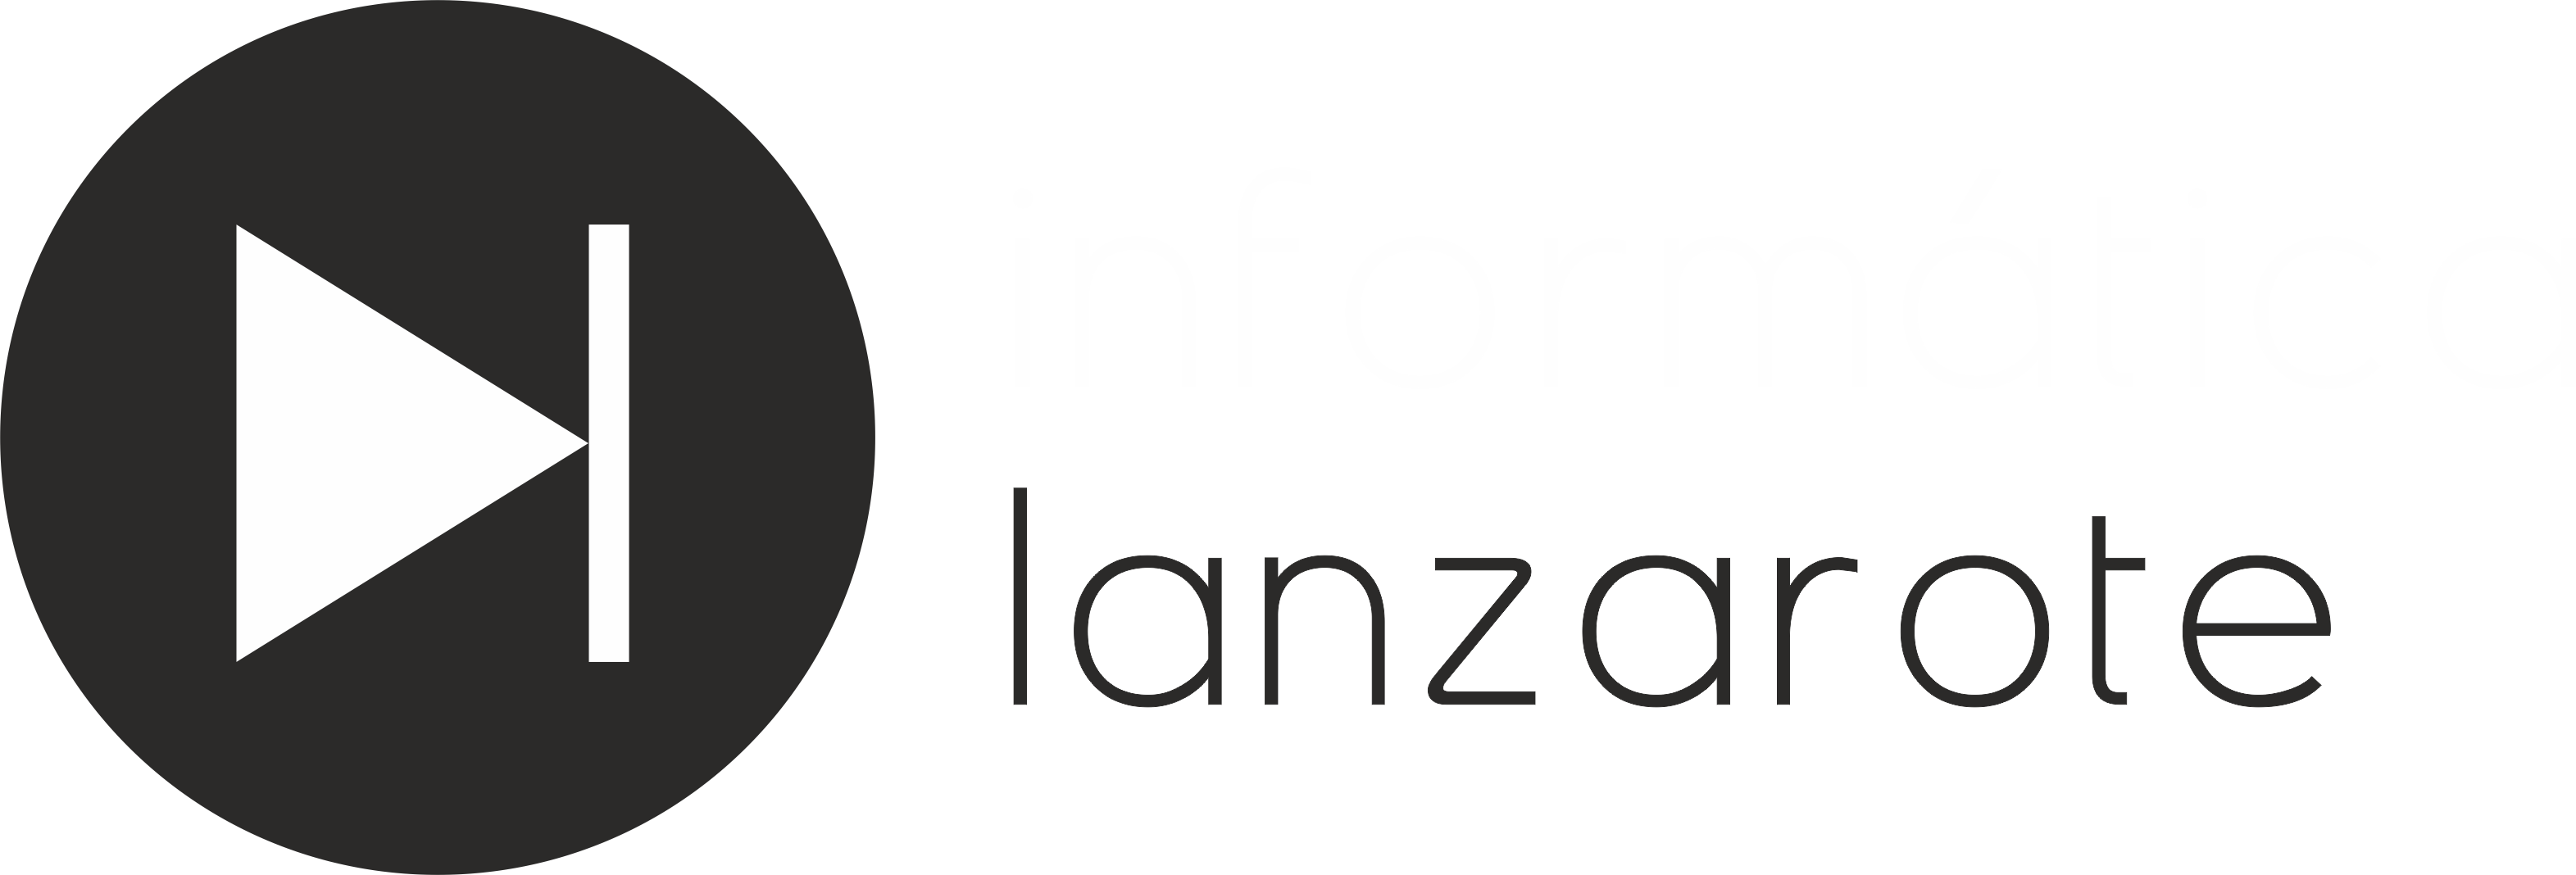 INFORMATICA LANZAROTE S.L.